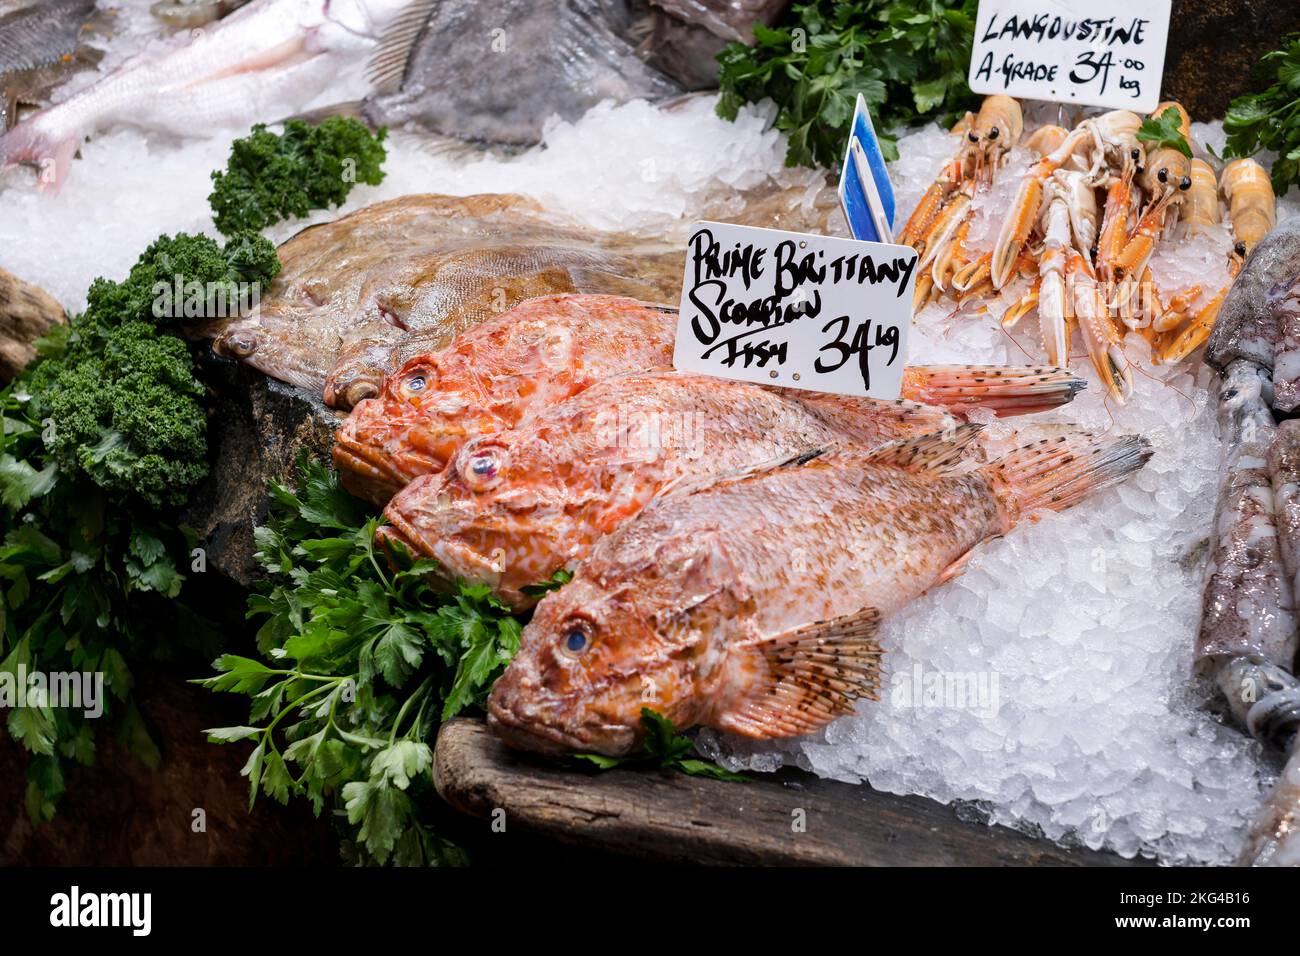 Frisch gebratener Skorpiefisch oder Skorpiefische zum Verkauf an einem Marktstand unter freiem Himmel. Die Gerichte sind preislich und werden auf Eis ausgestellt. Stockfoto